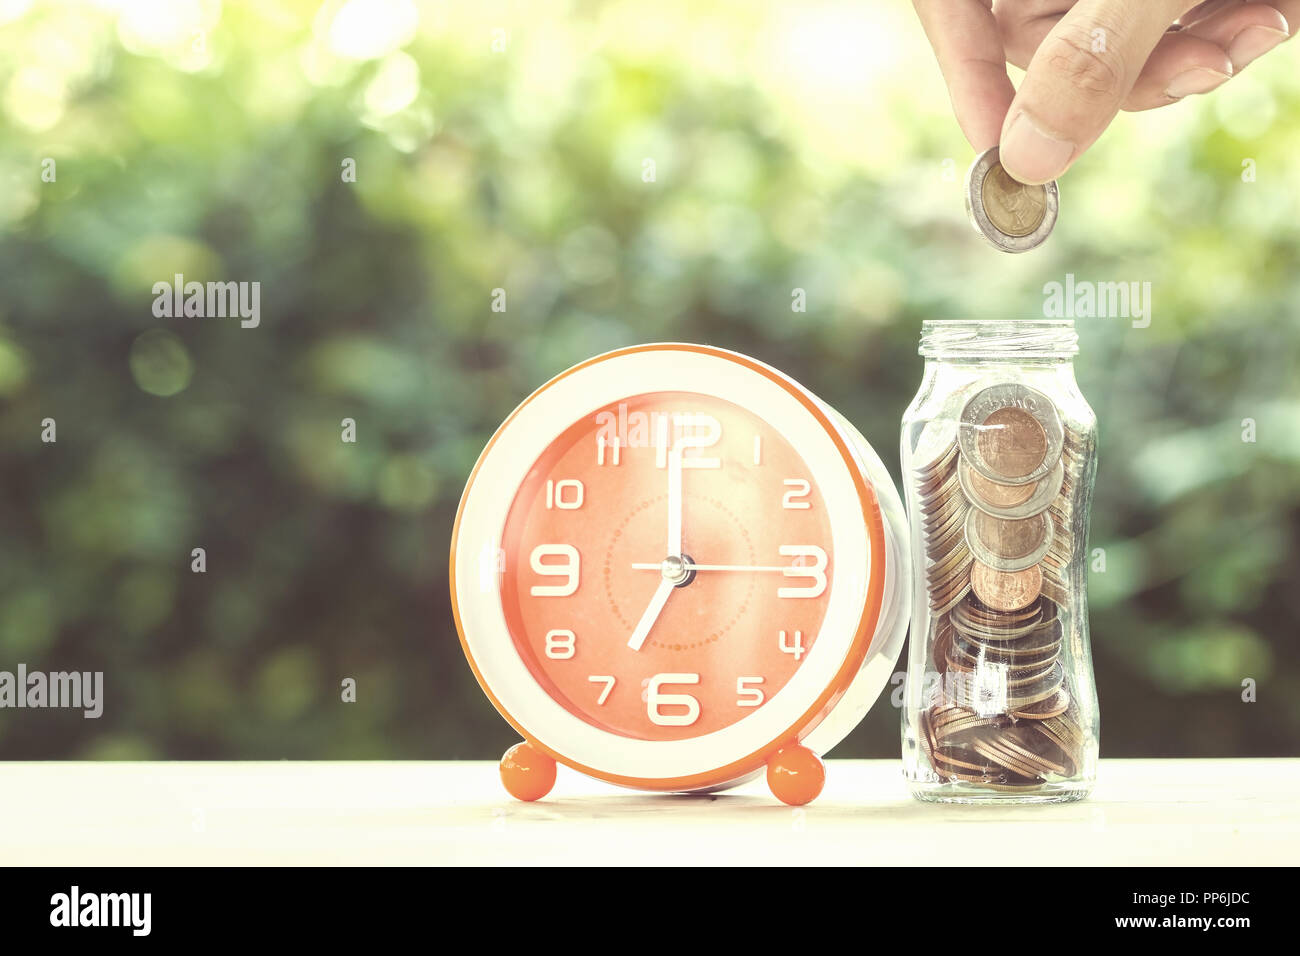 L'argent d'épargne et investissement de temps concept : un homme part mettre de monnaie dans un bocal en verre avec de l'horloge sur une table avec la nature verte comme arrière-plan. Concept Banque D'Images